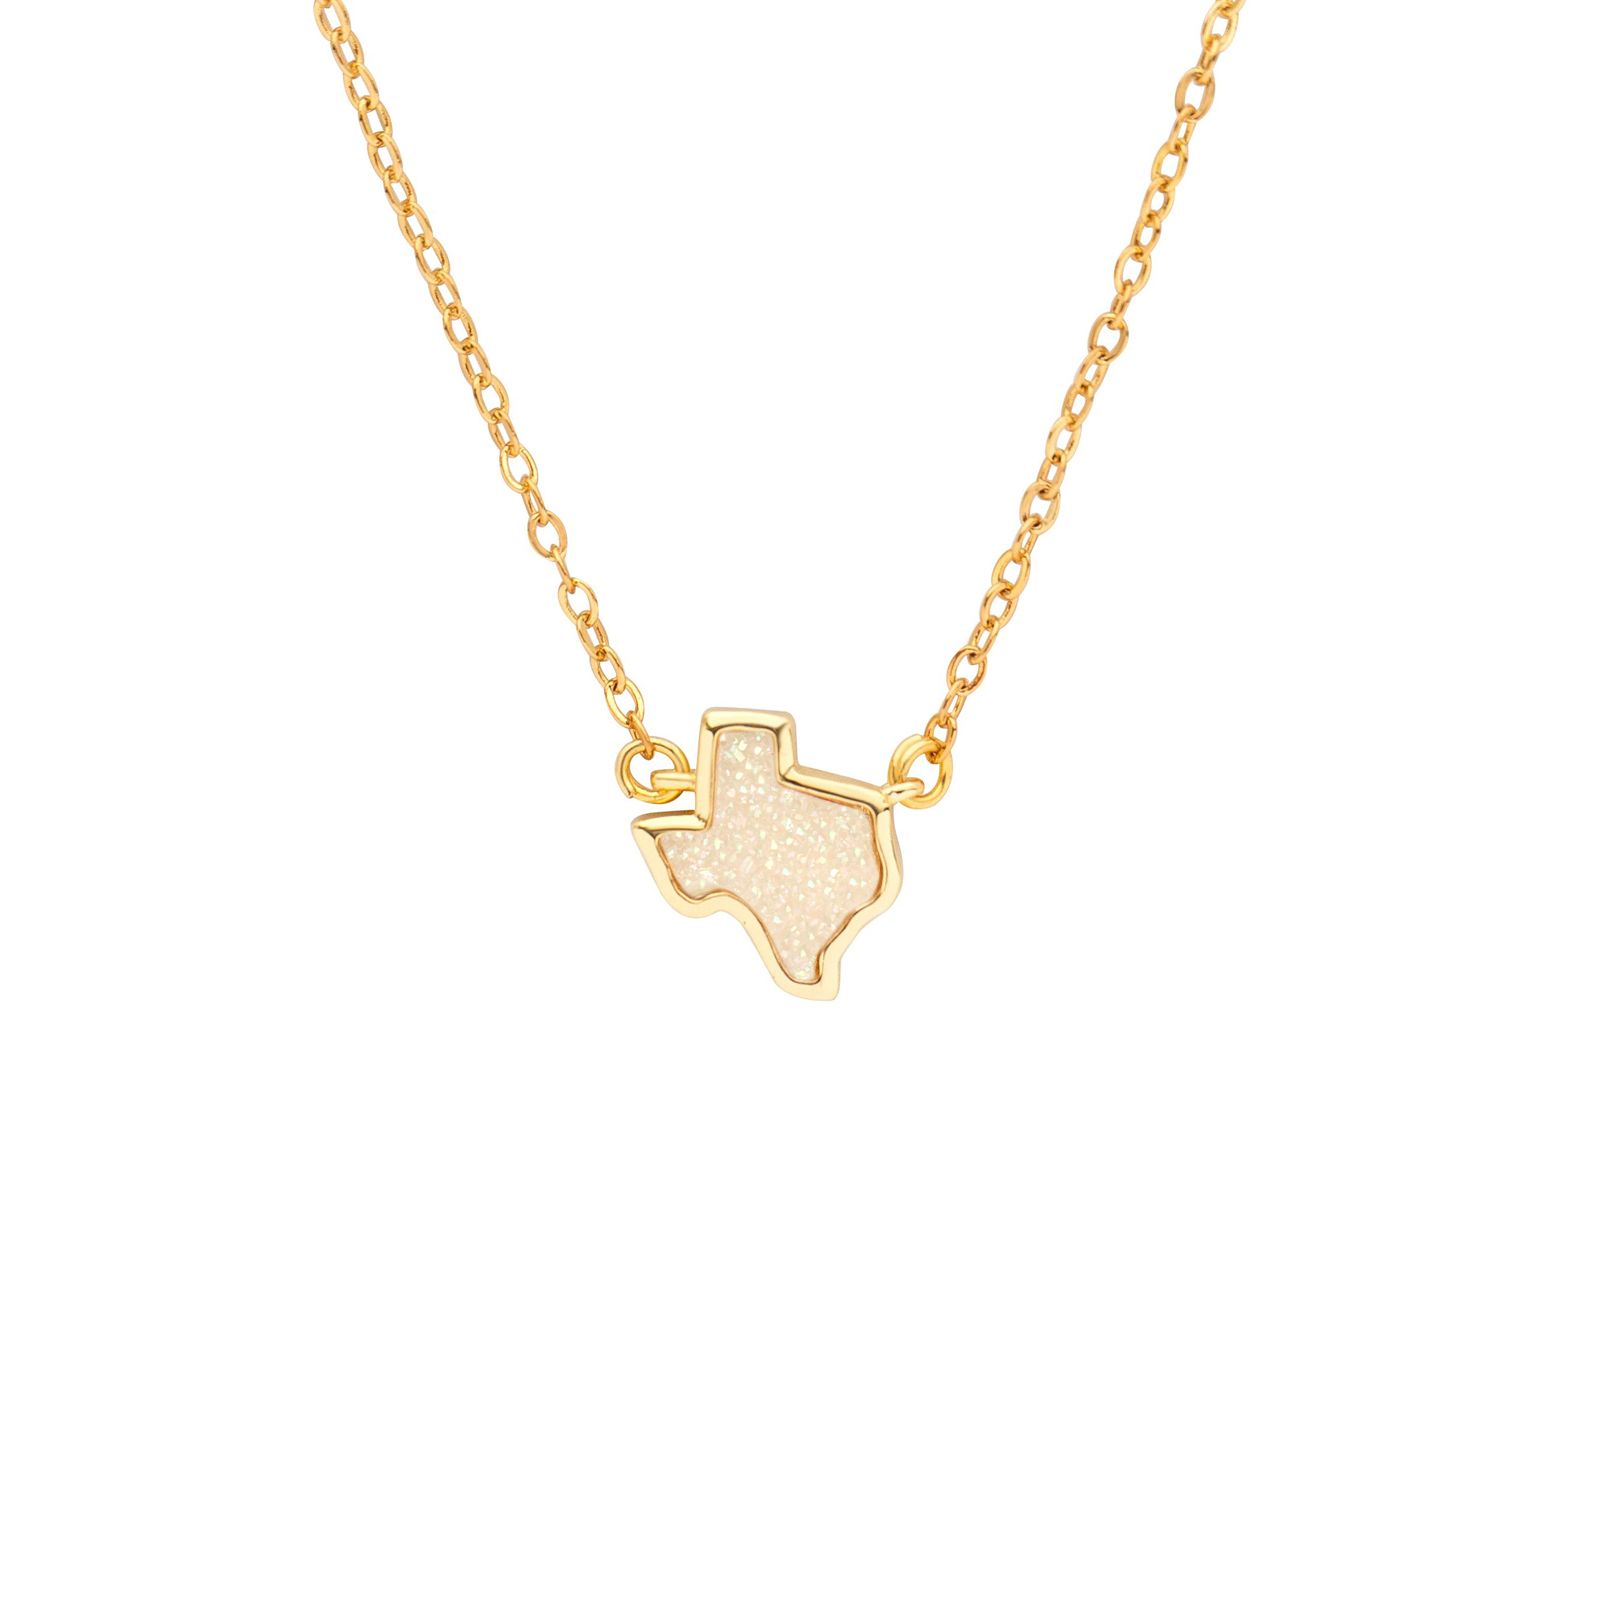 Texas Druzy Necklace - White